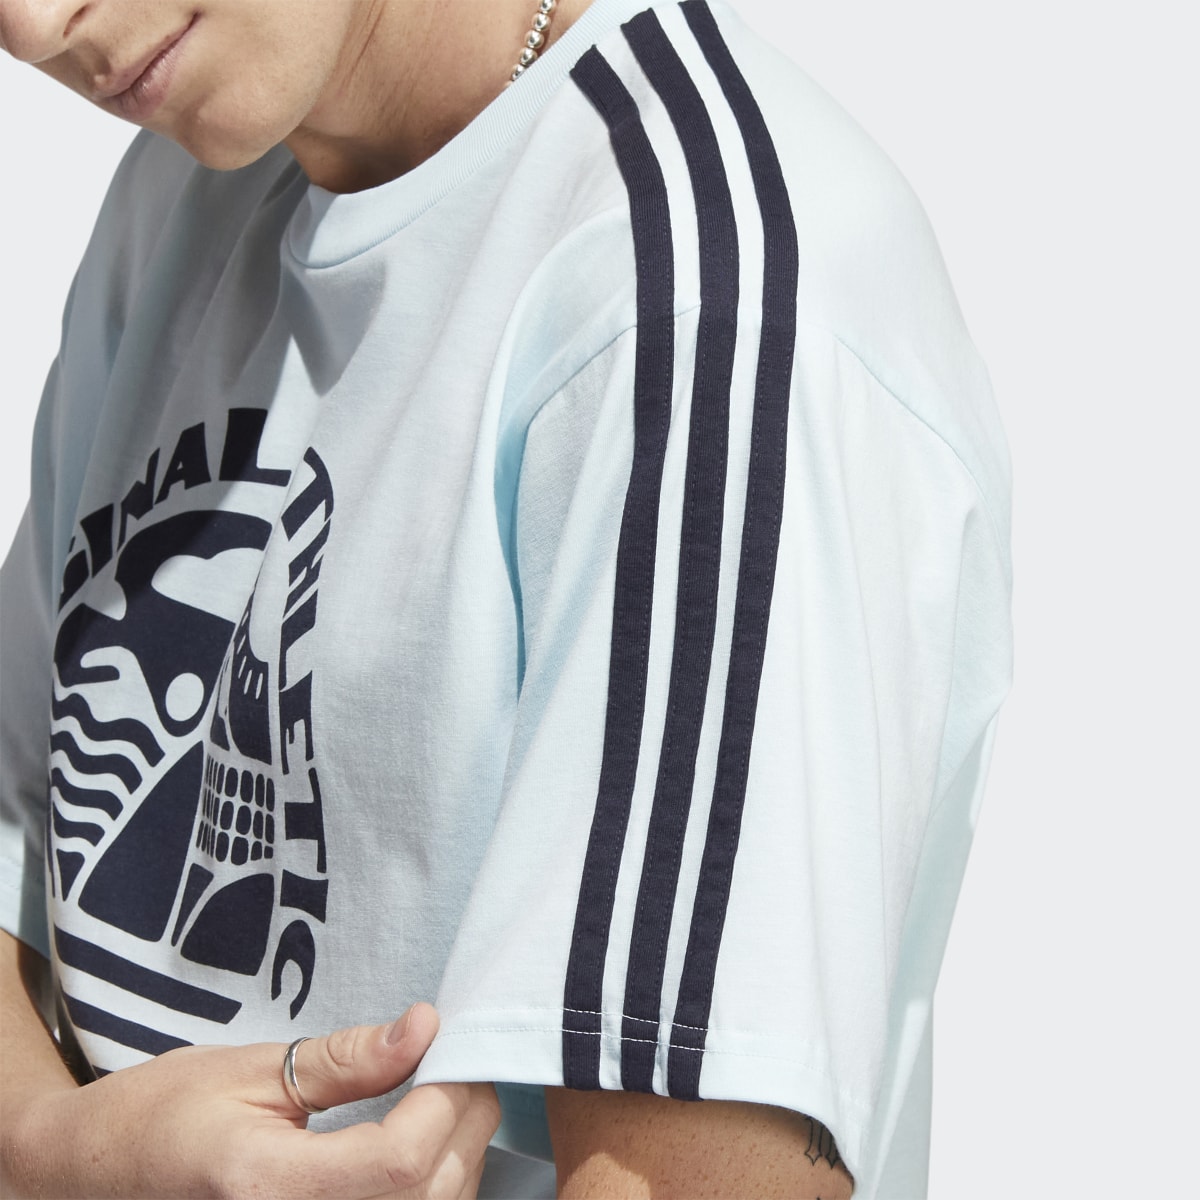 Adidas Original Athletic Club 3-Stripes T-Shirt. 7